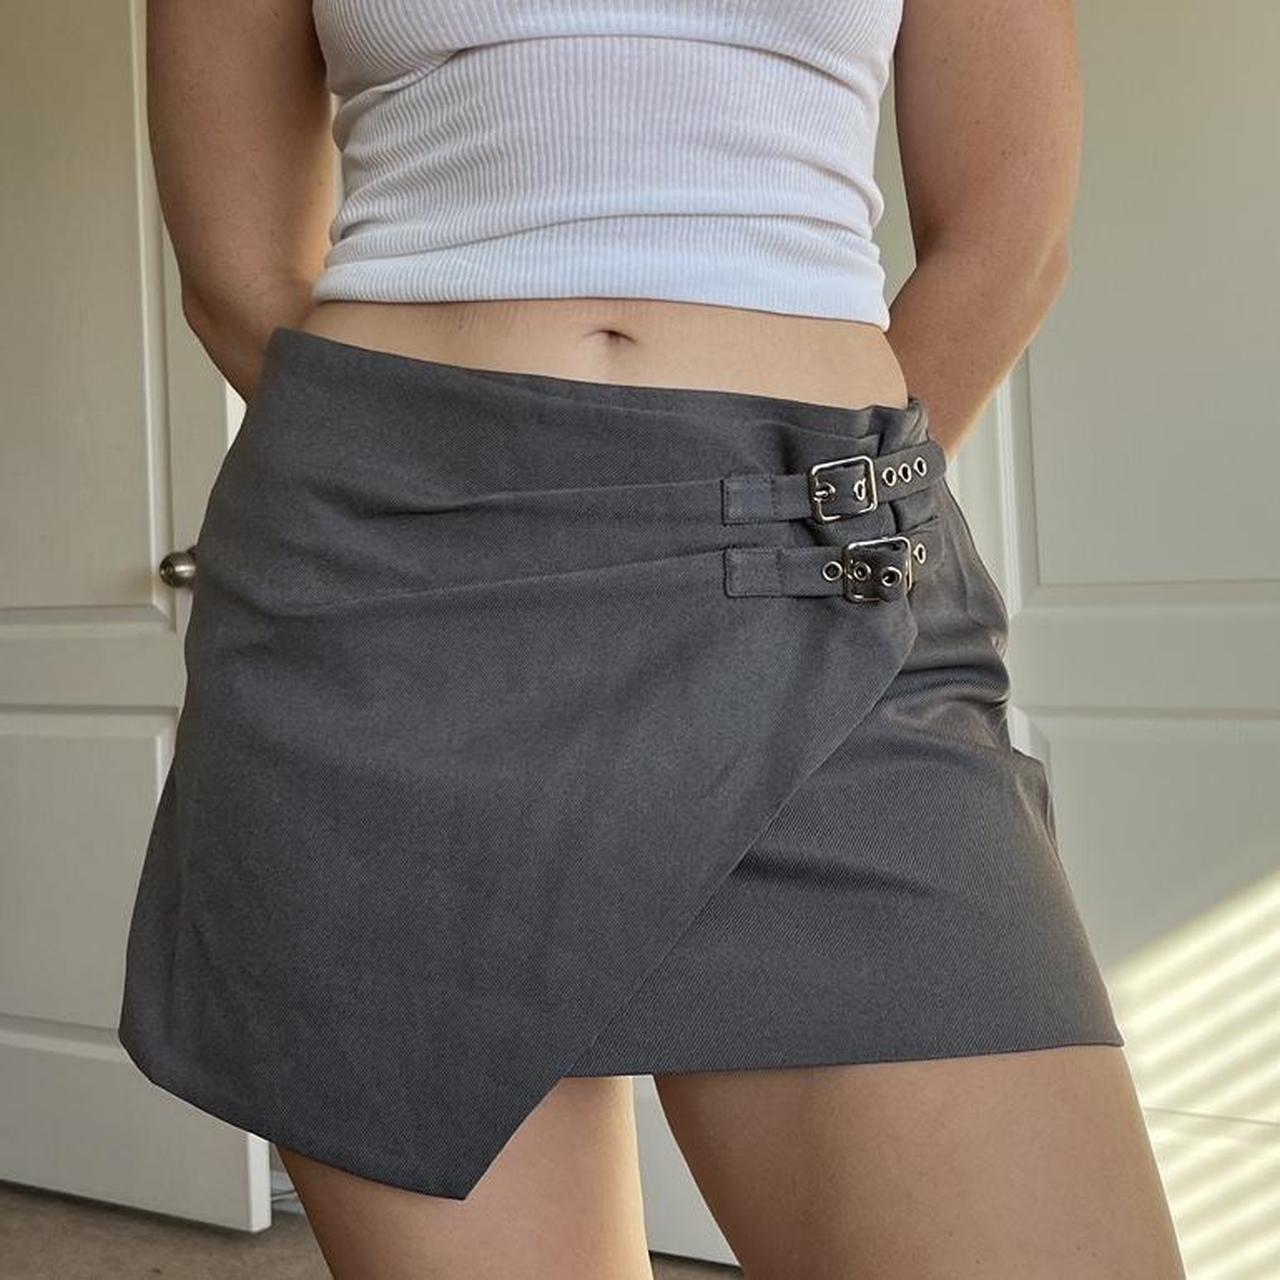 Fashion Nova Women's Skirt Belt